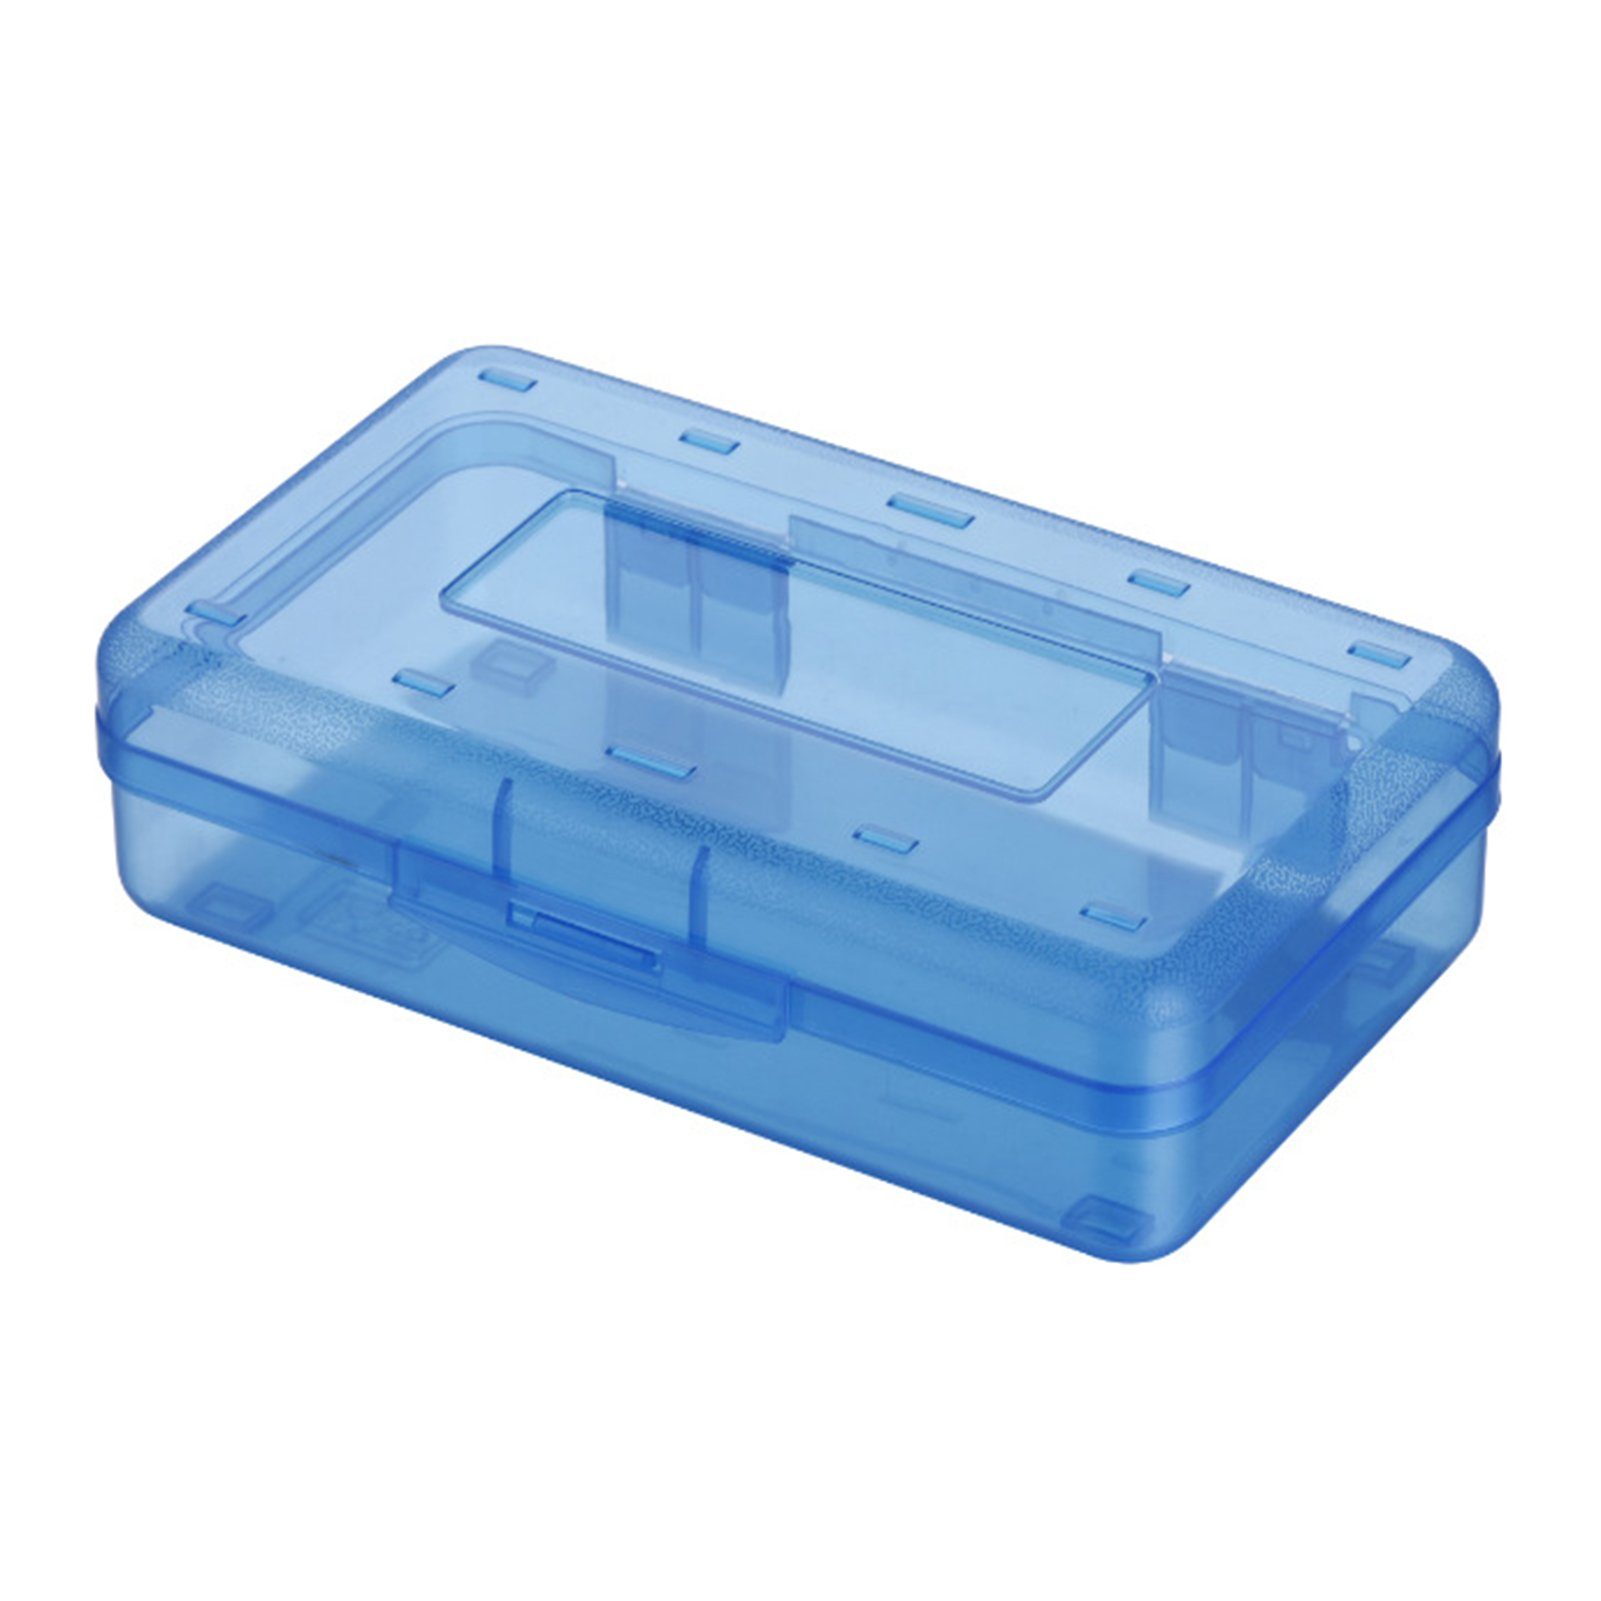 Blusmart Federtasche Schöne Transparente/bunte Bleistiftbox, Tragbare Federtasche, Bleistifttasche blue